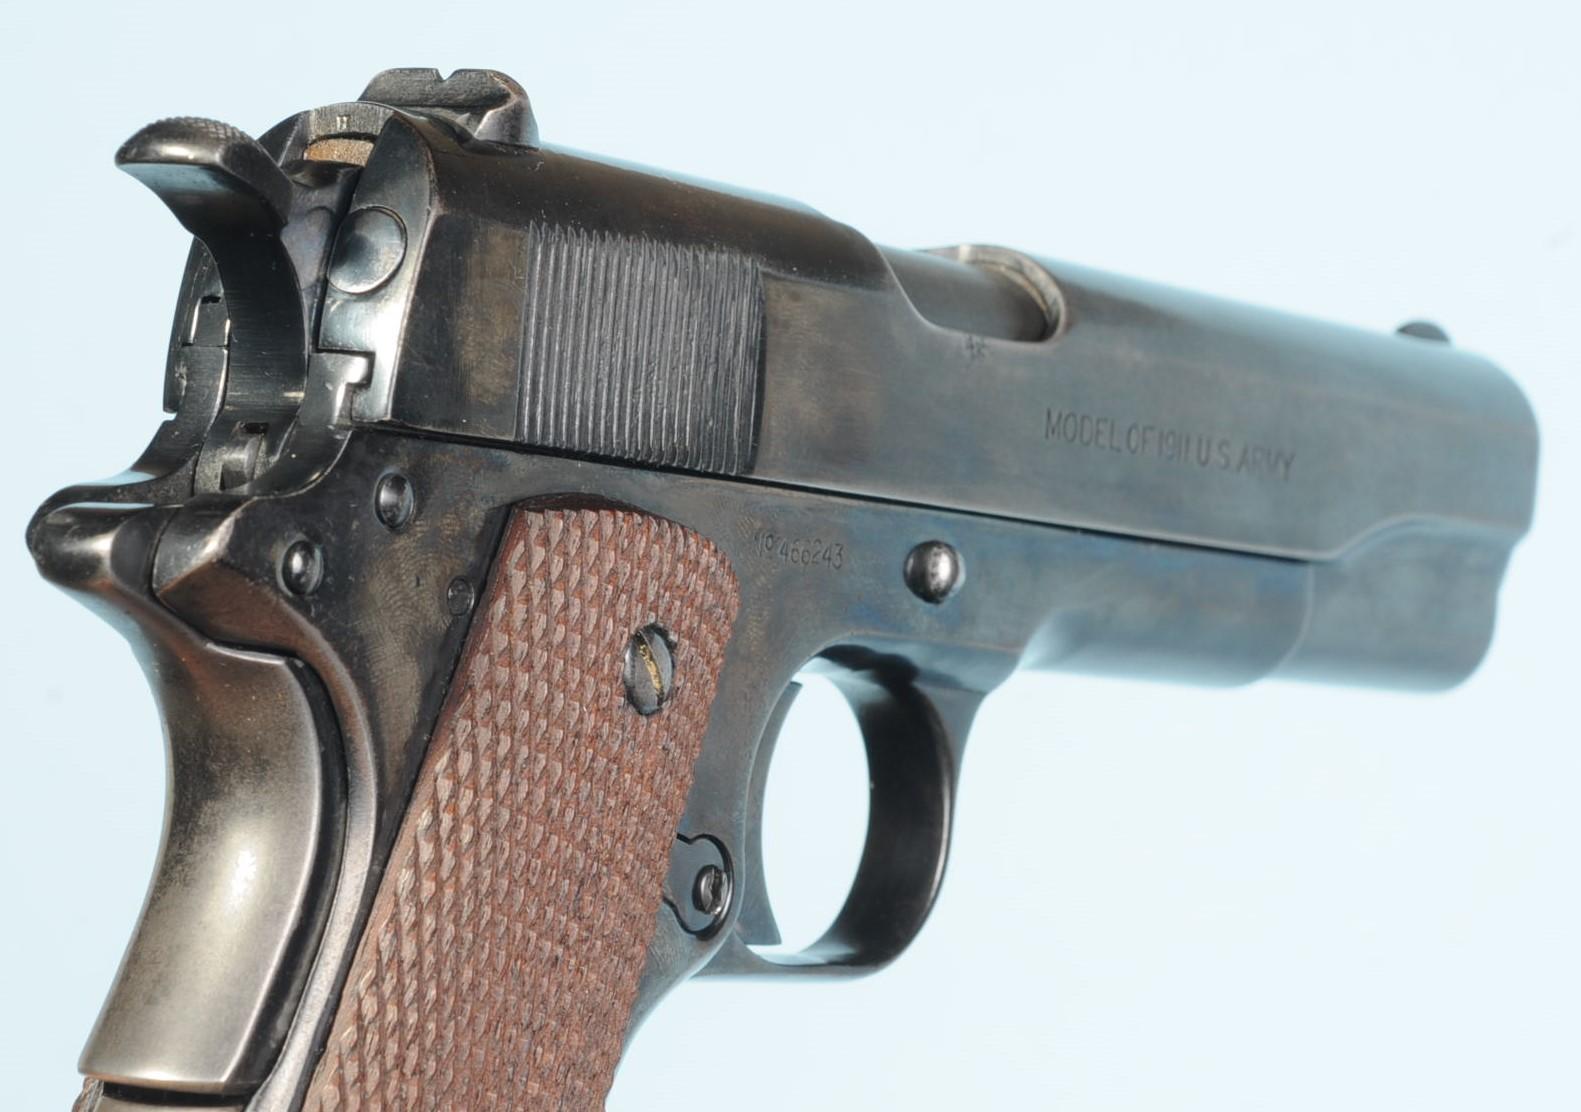 US Military WWI Colt M1911 .45 ACP Semi-Automatic Pistol - FFL # 466243 (A1)